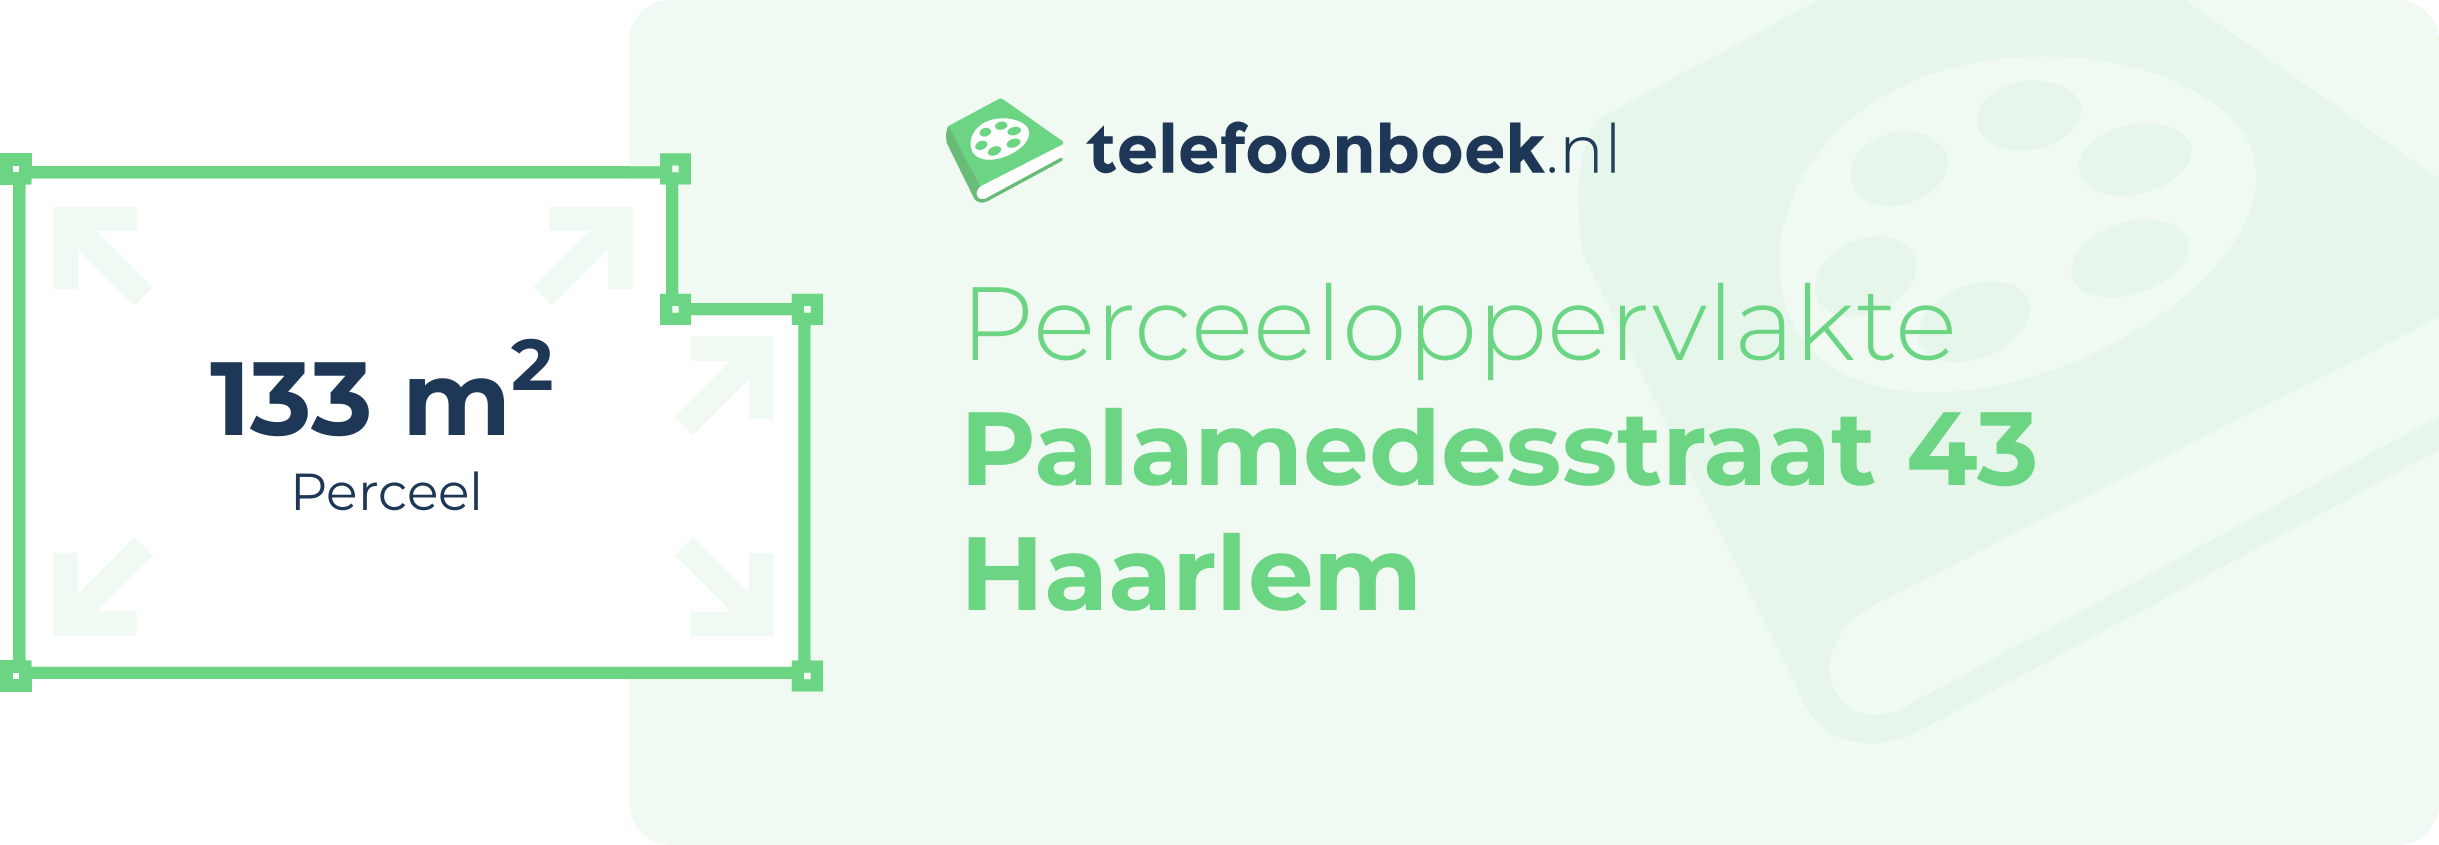 Perceeloppervlakte Palamedesstraat 43 Haarlem